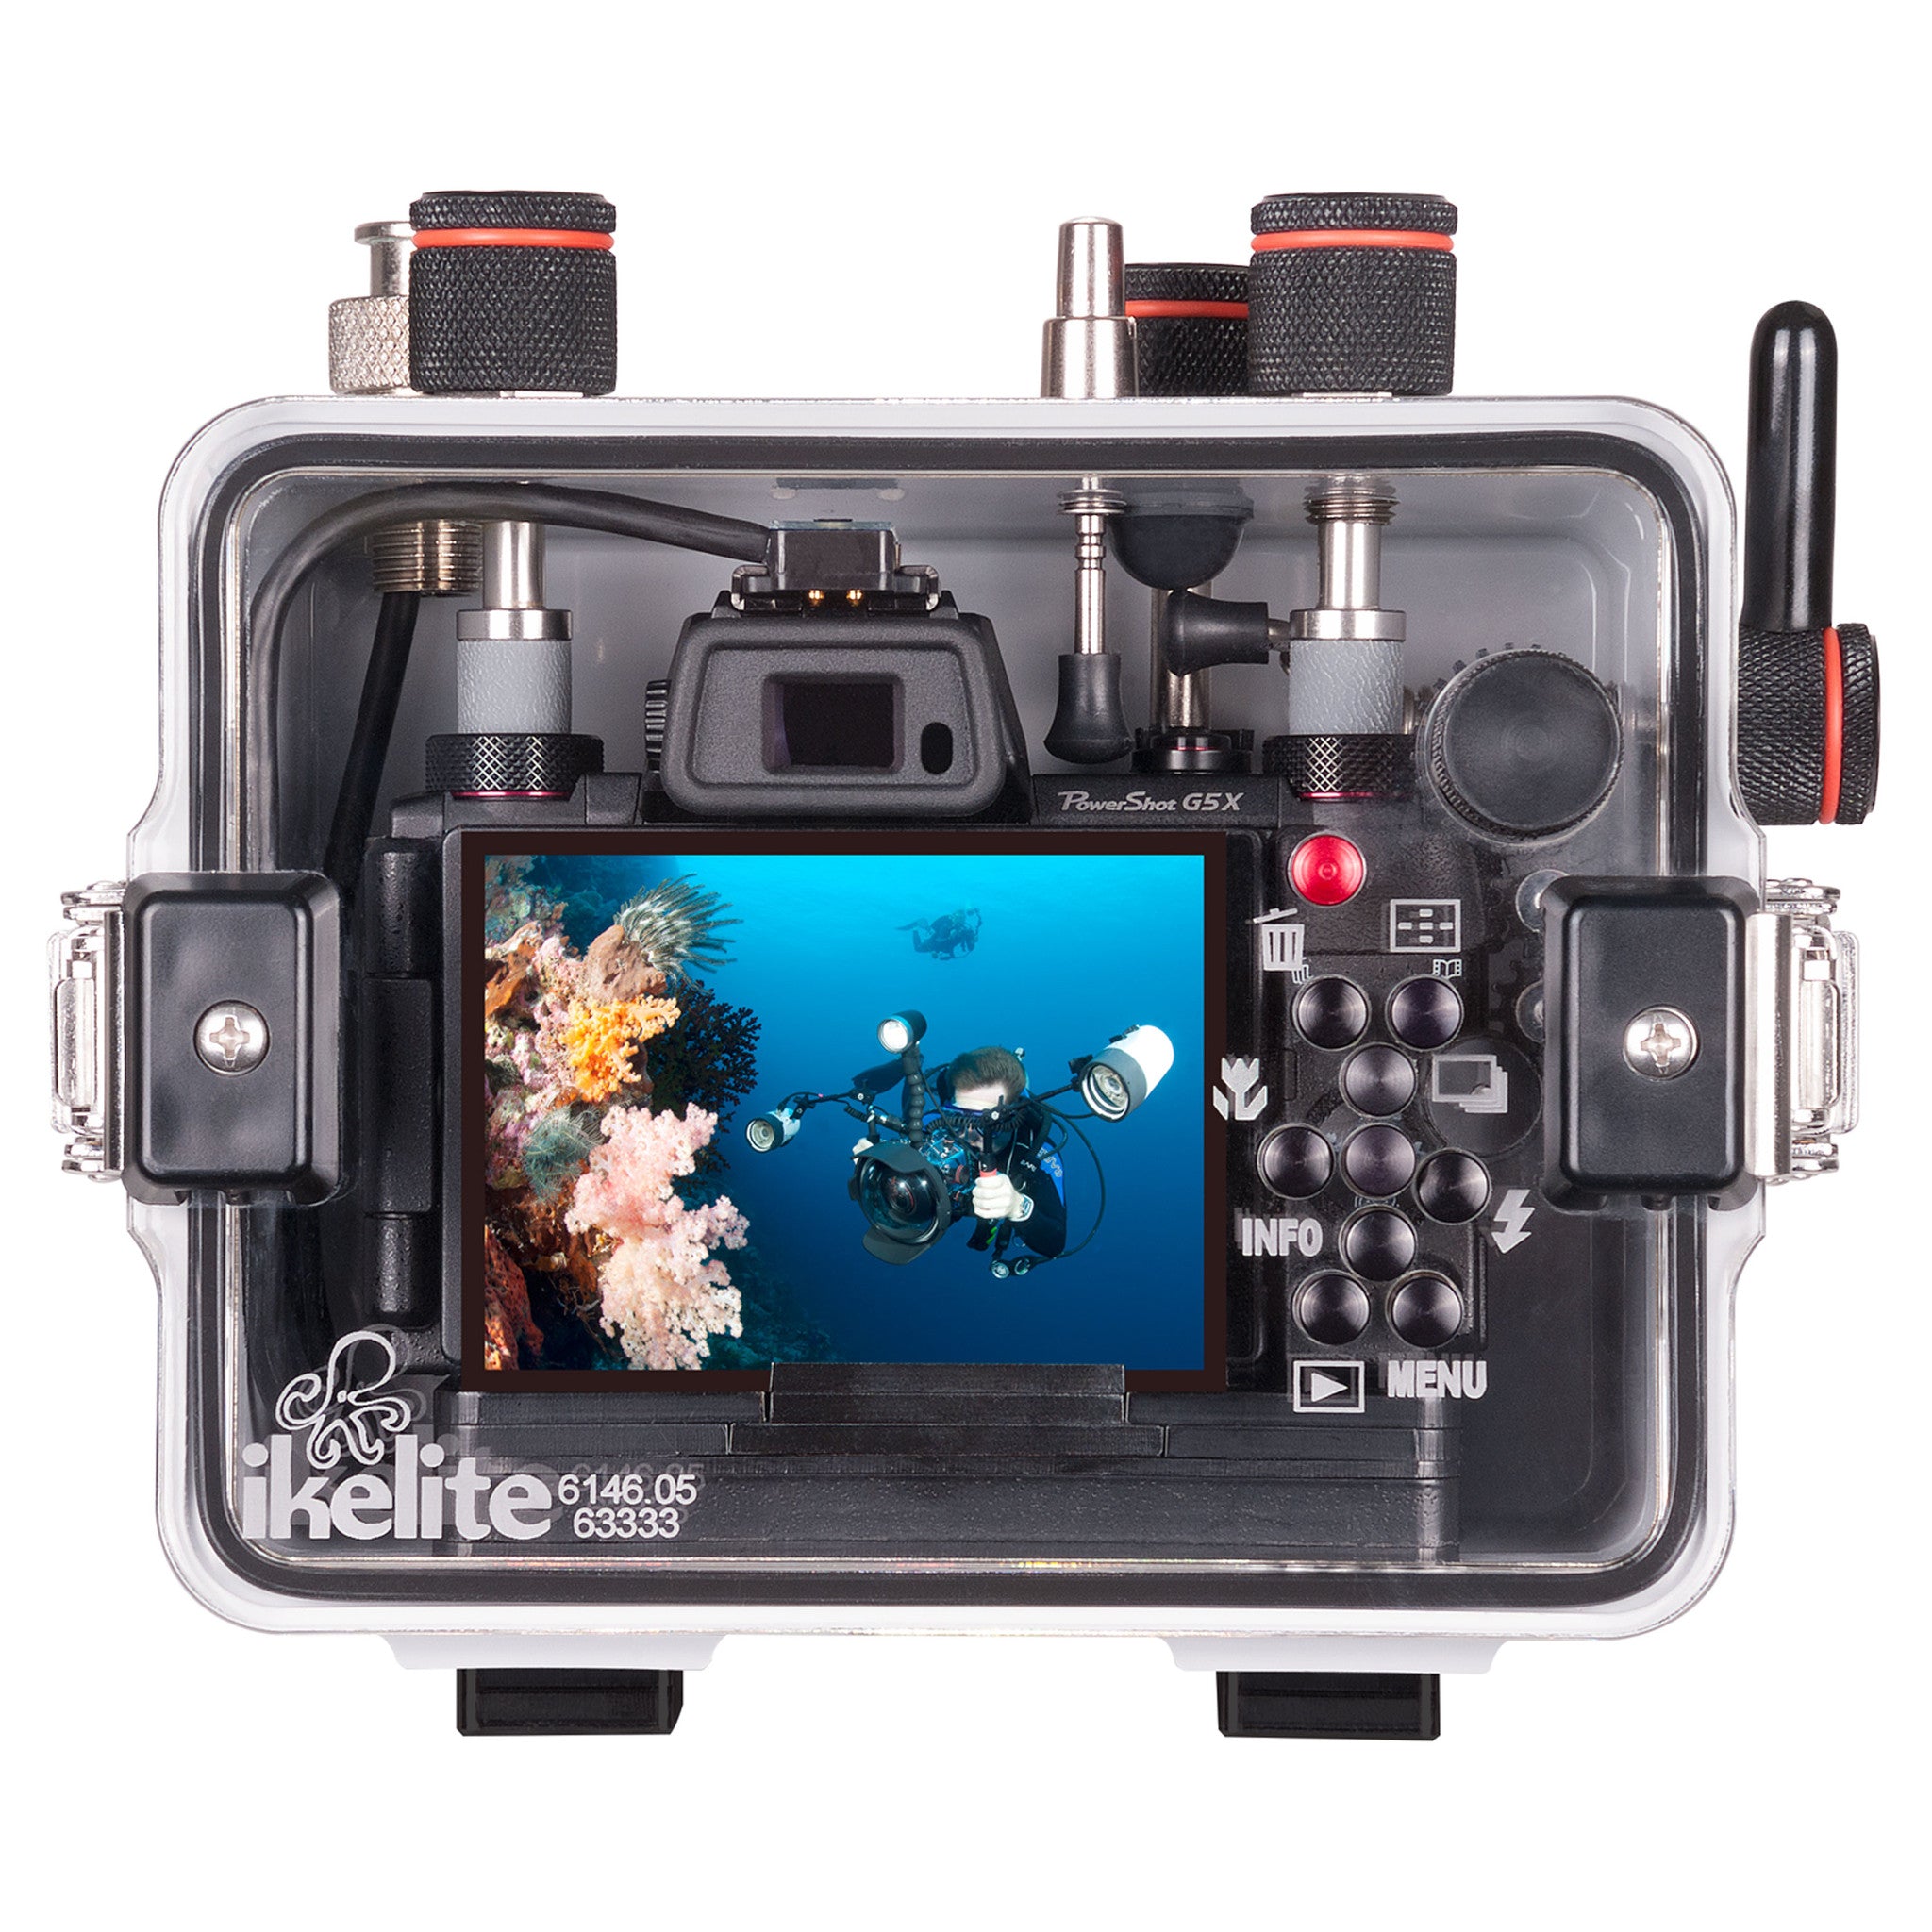 Underwater Housing for Canon PowerShot G5 X